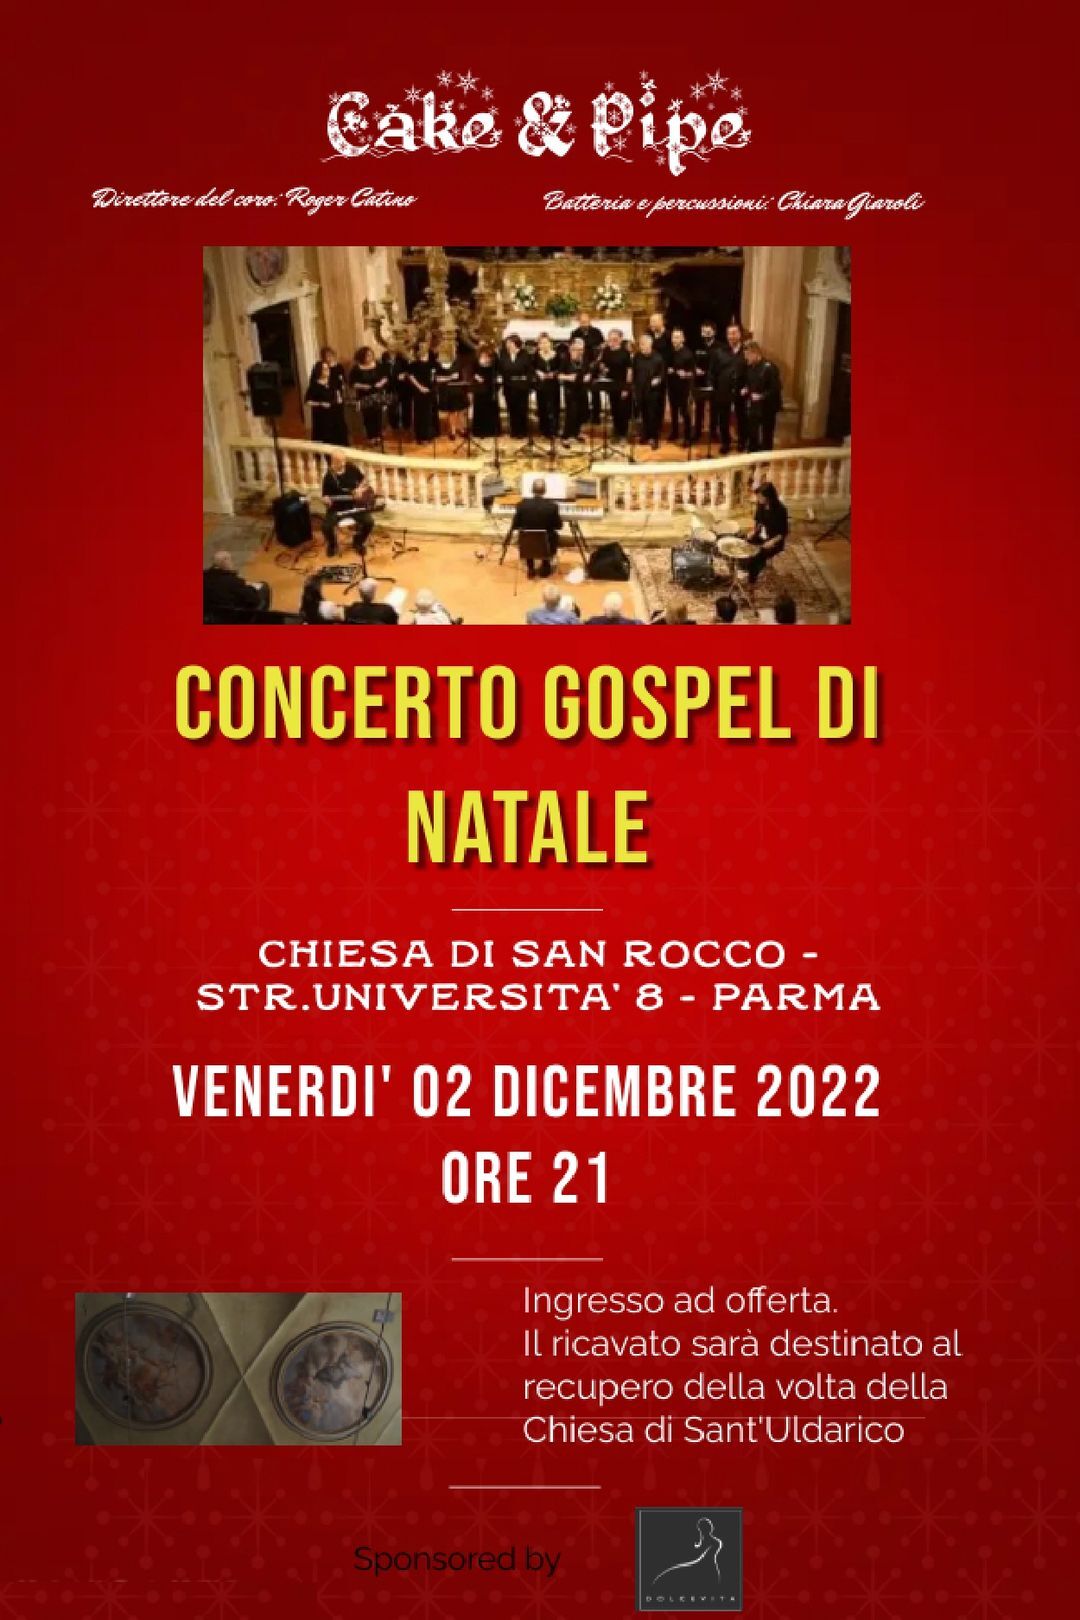 Coro Gospel " Cake & Pipe " concerto di Natale